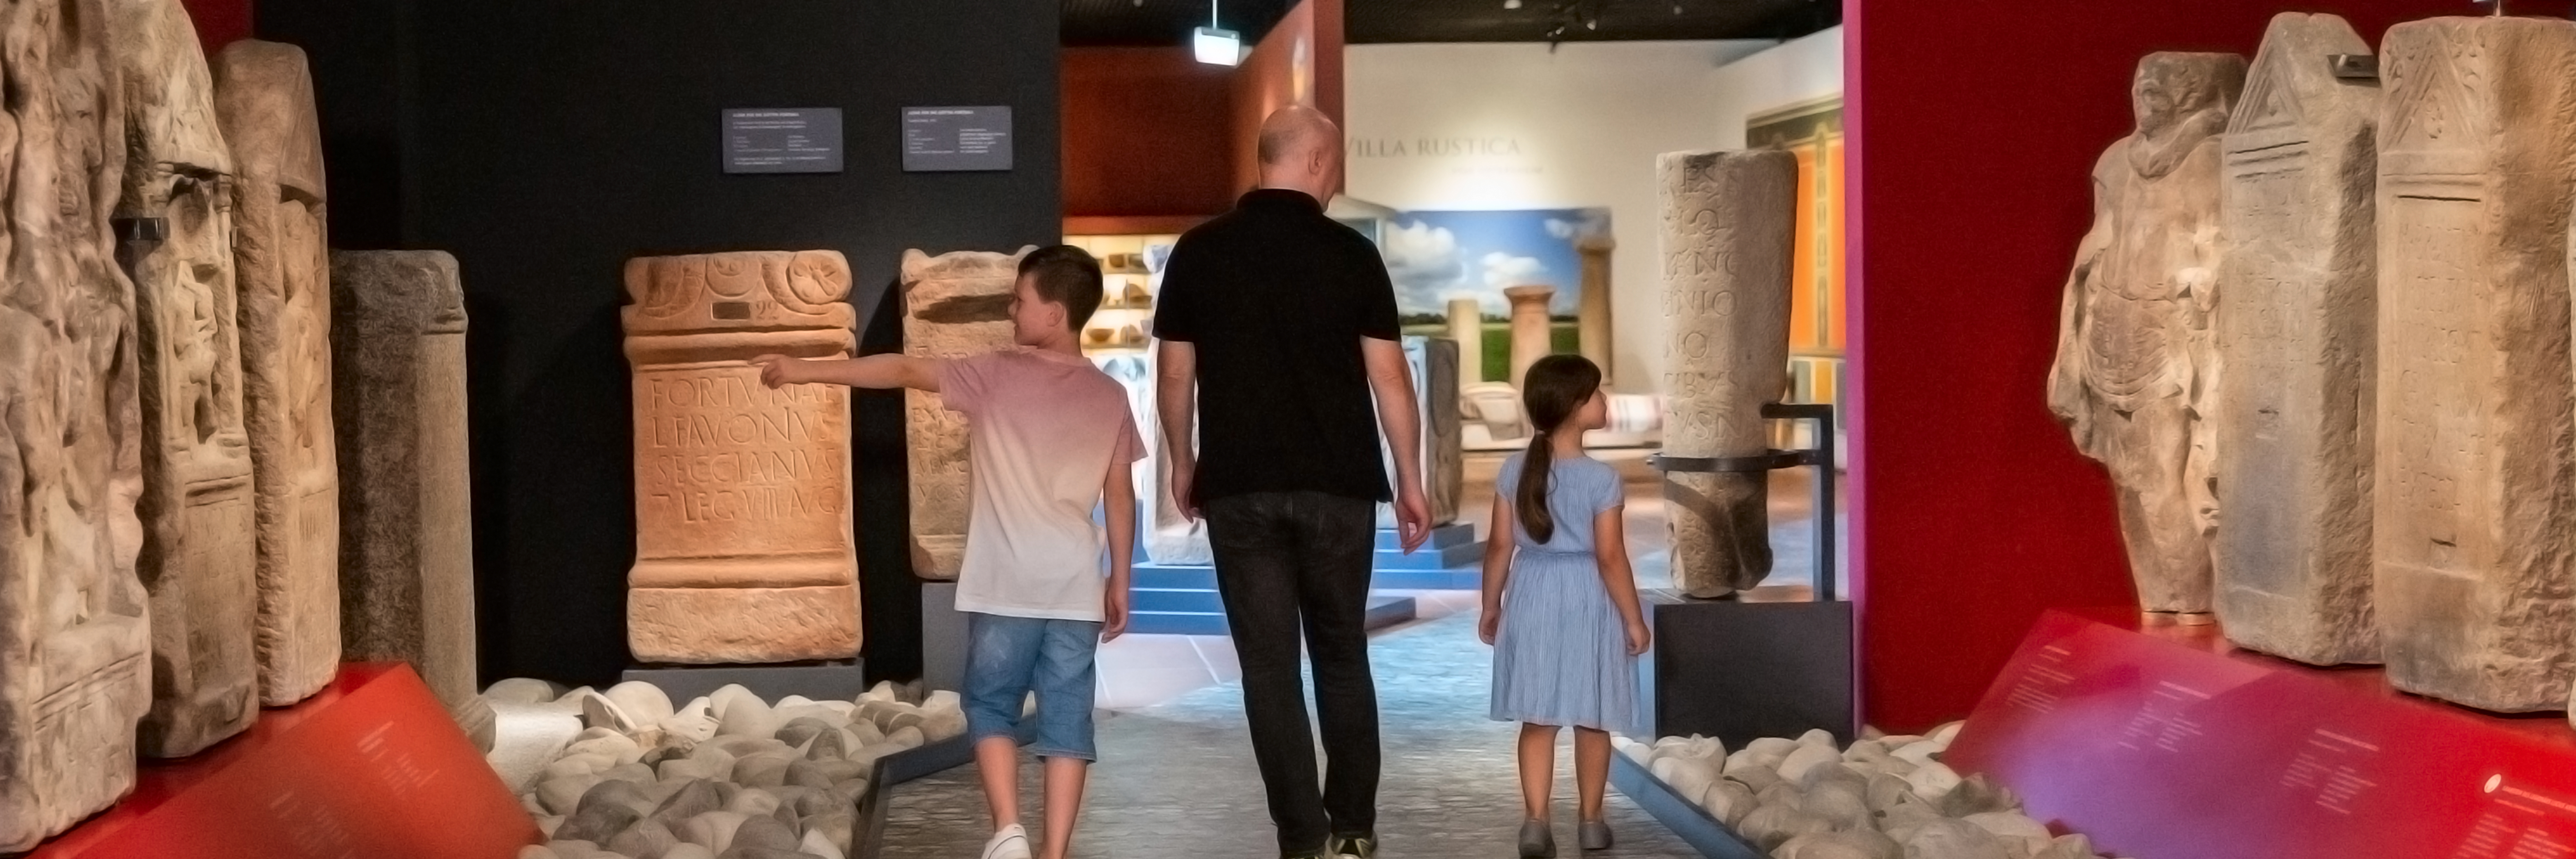 Besucher in der Ausstellung Versunkene Geschichte